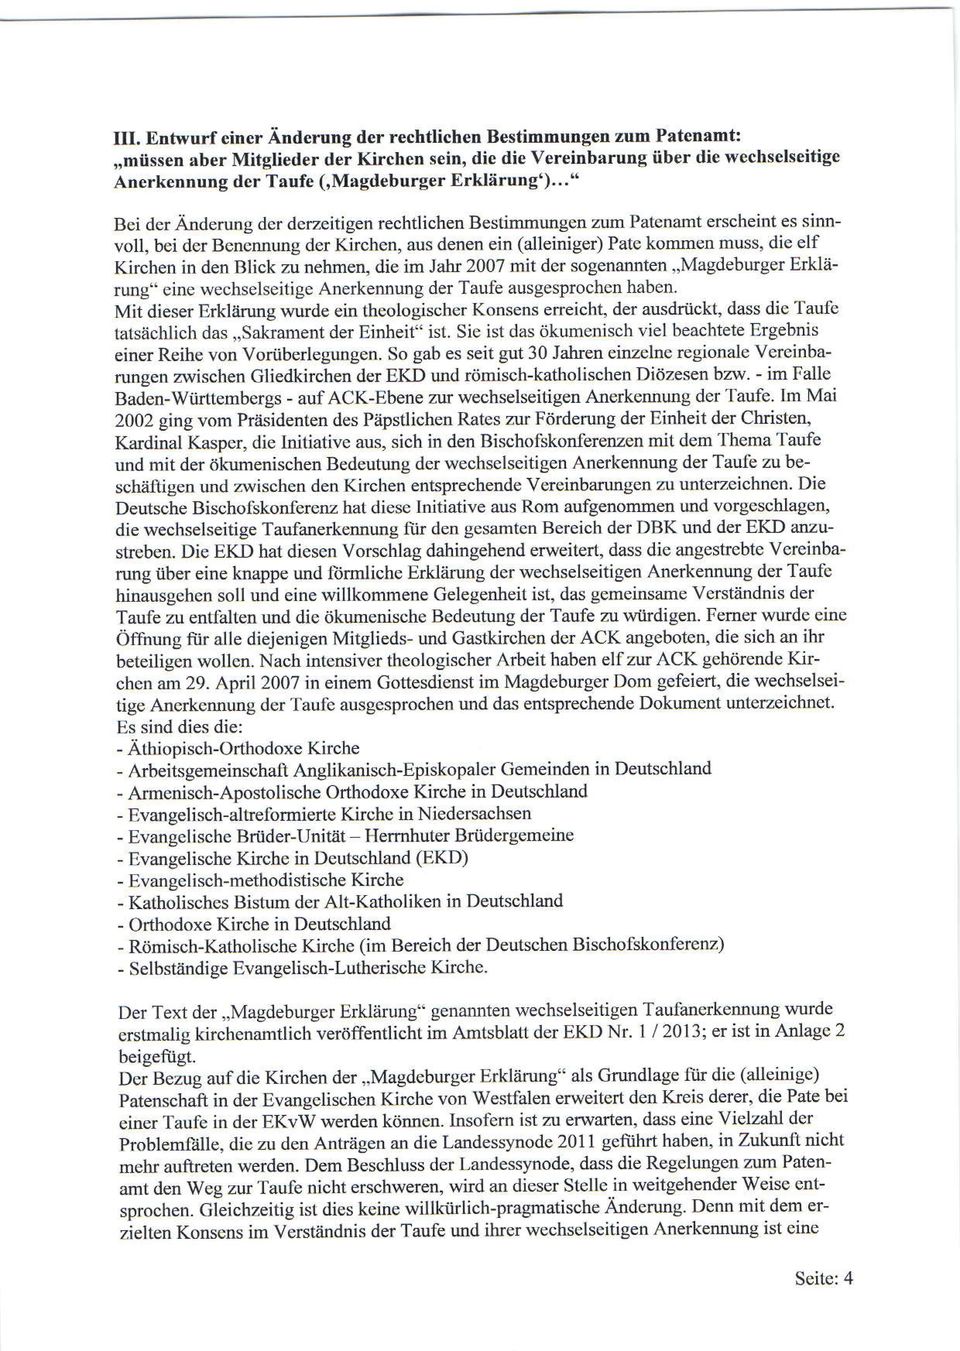 nehmen, die im Jhr 2007 mit der sgennnten,,mgdeburger rklärung" eine wechselseitige Anerkennung der Tufe usgesprcchen hben.